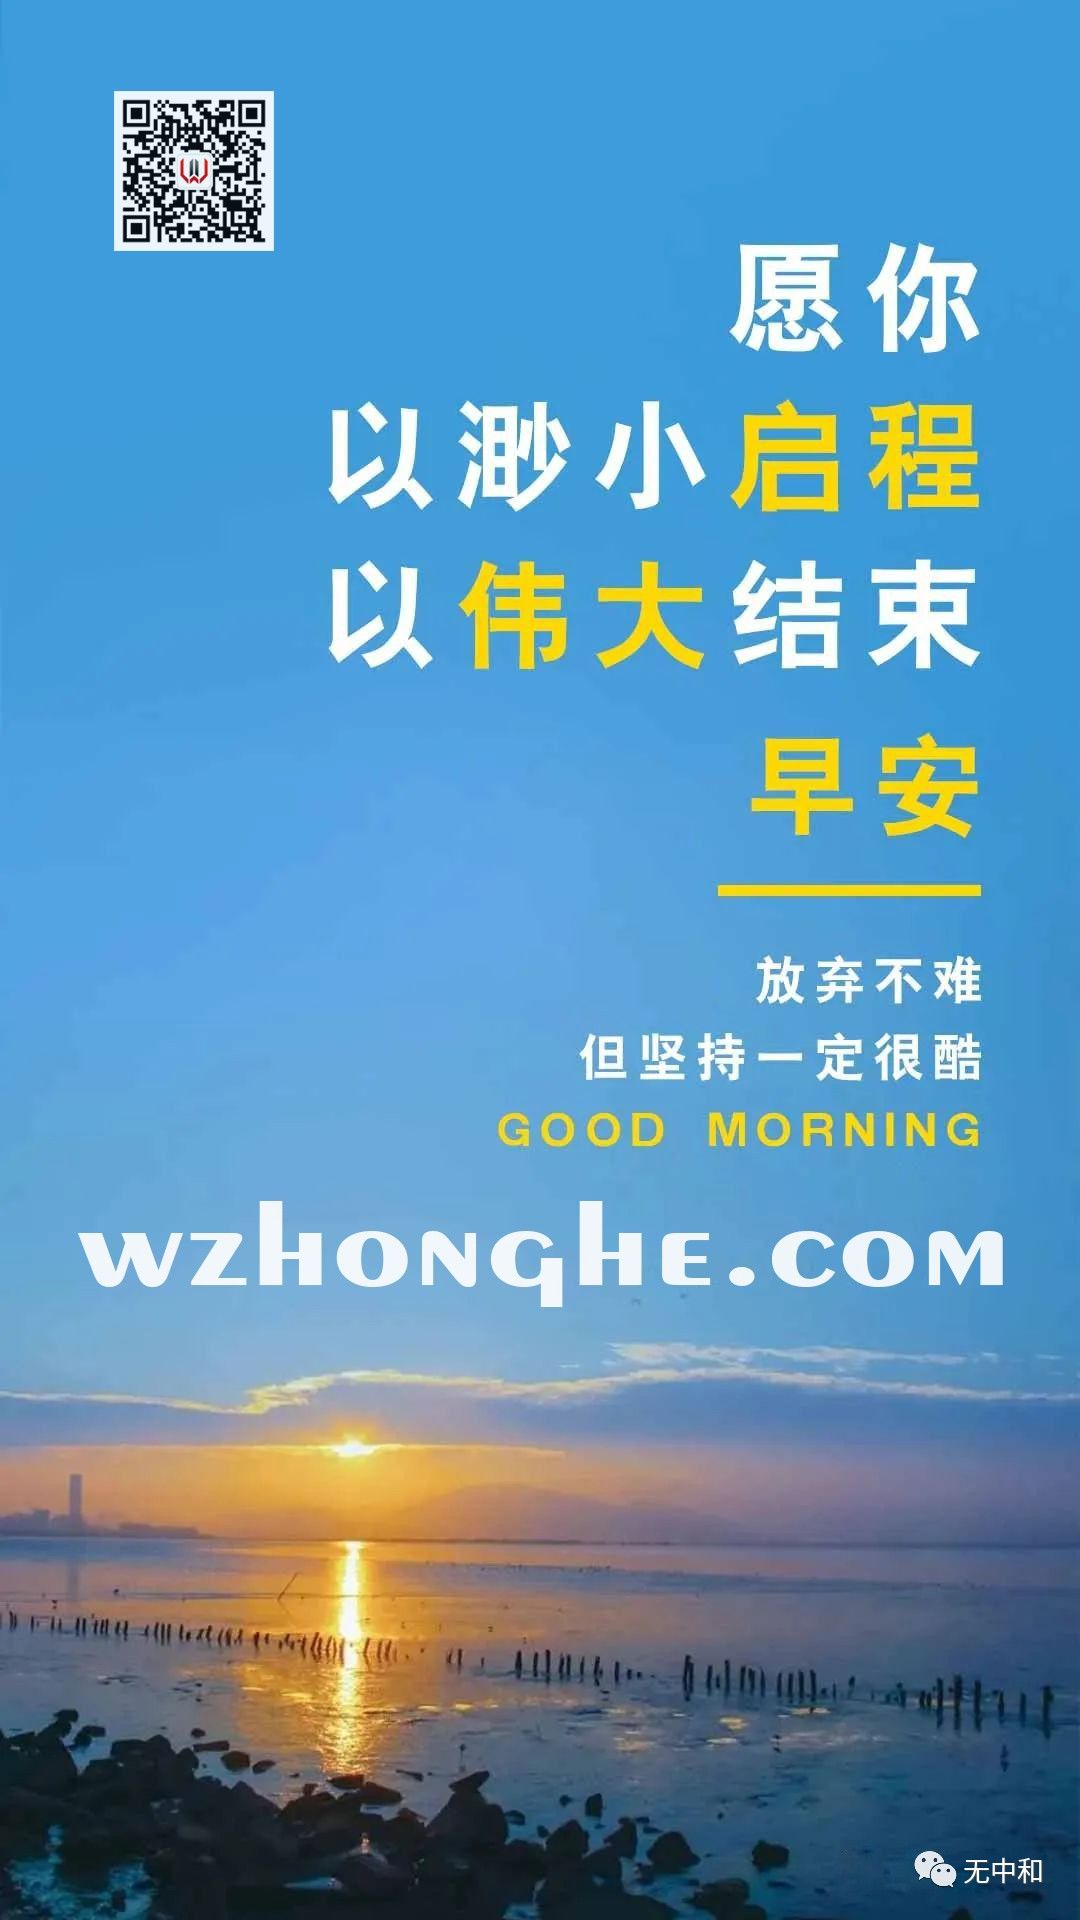 每天一分钟，知晓天下事！- 无中和wzhonghe.com -2